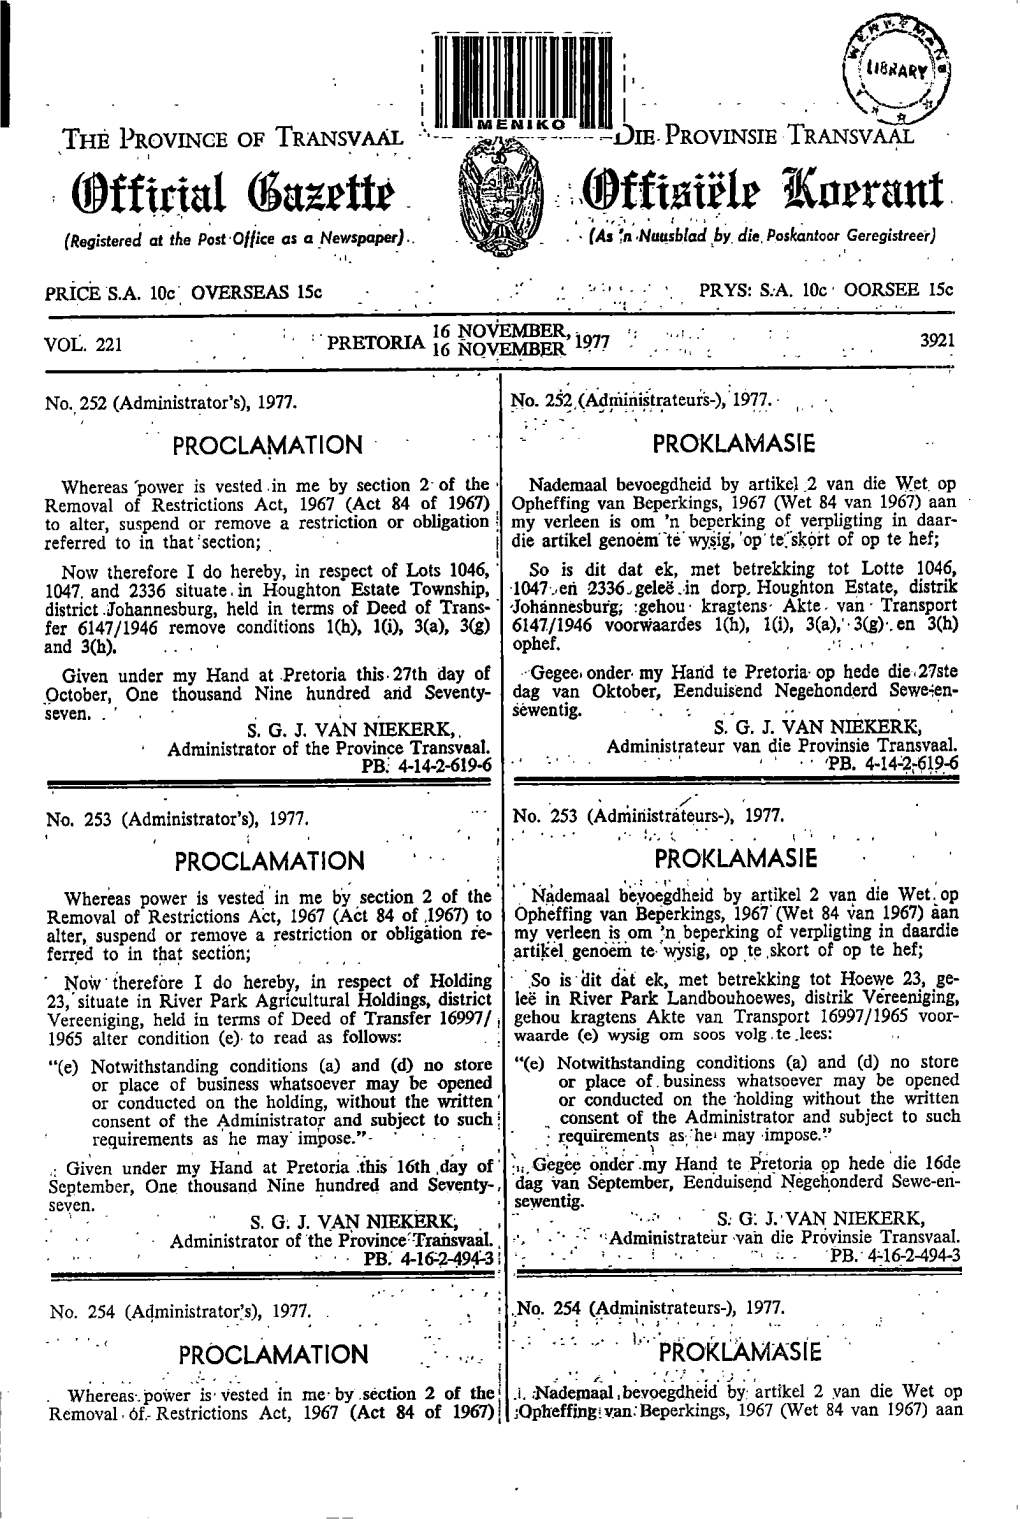 Transvaal Provincial Gazette Vol 221 No